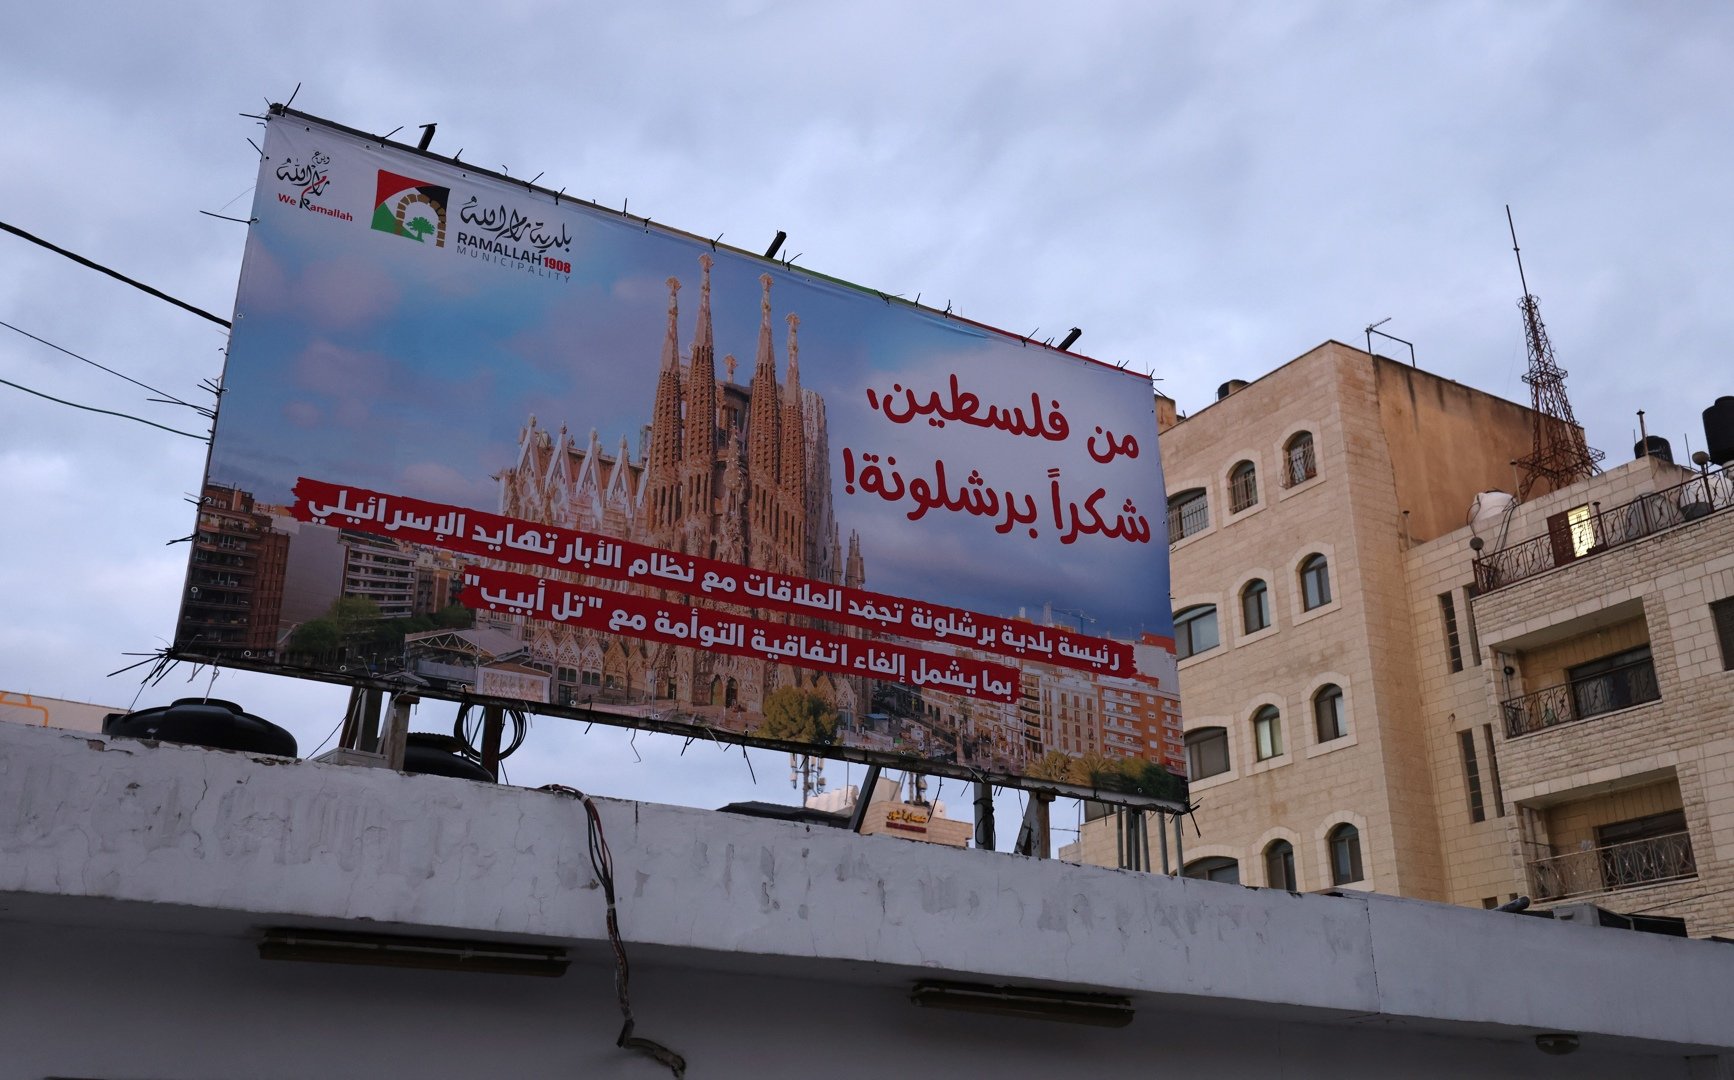 La ciudad palestina de Ramala agradece a Colau el boicot a Tel Aviv